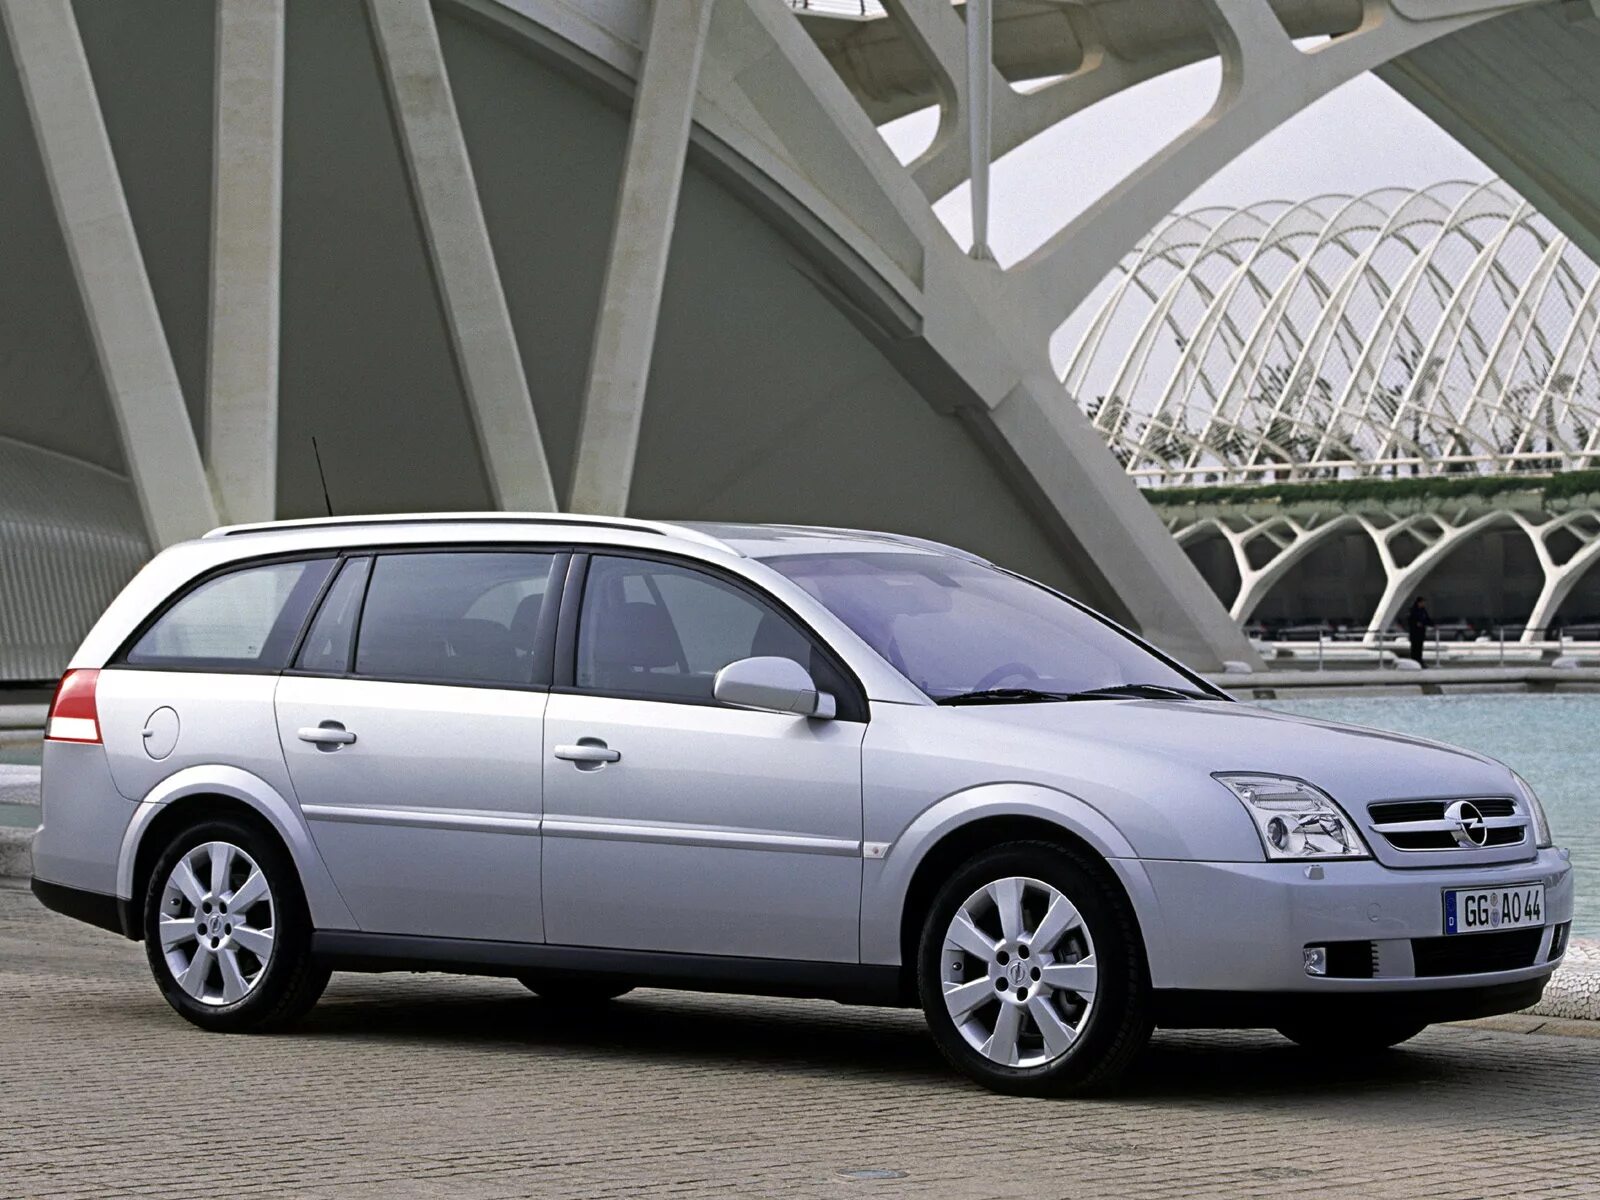 Вектра караван. Опель Вектра 2004 универсал. Opel Vectra c 2003 универсал. Opel Vectra c 2004 универсал. Опель Вектра с 2005 универсал.